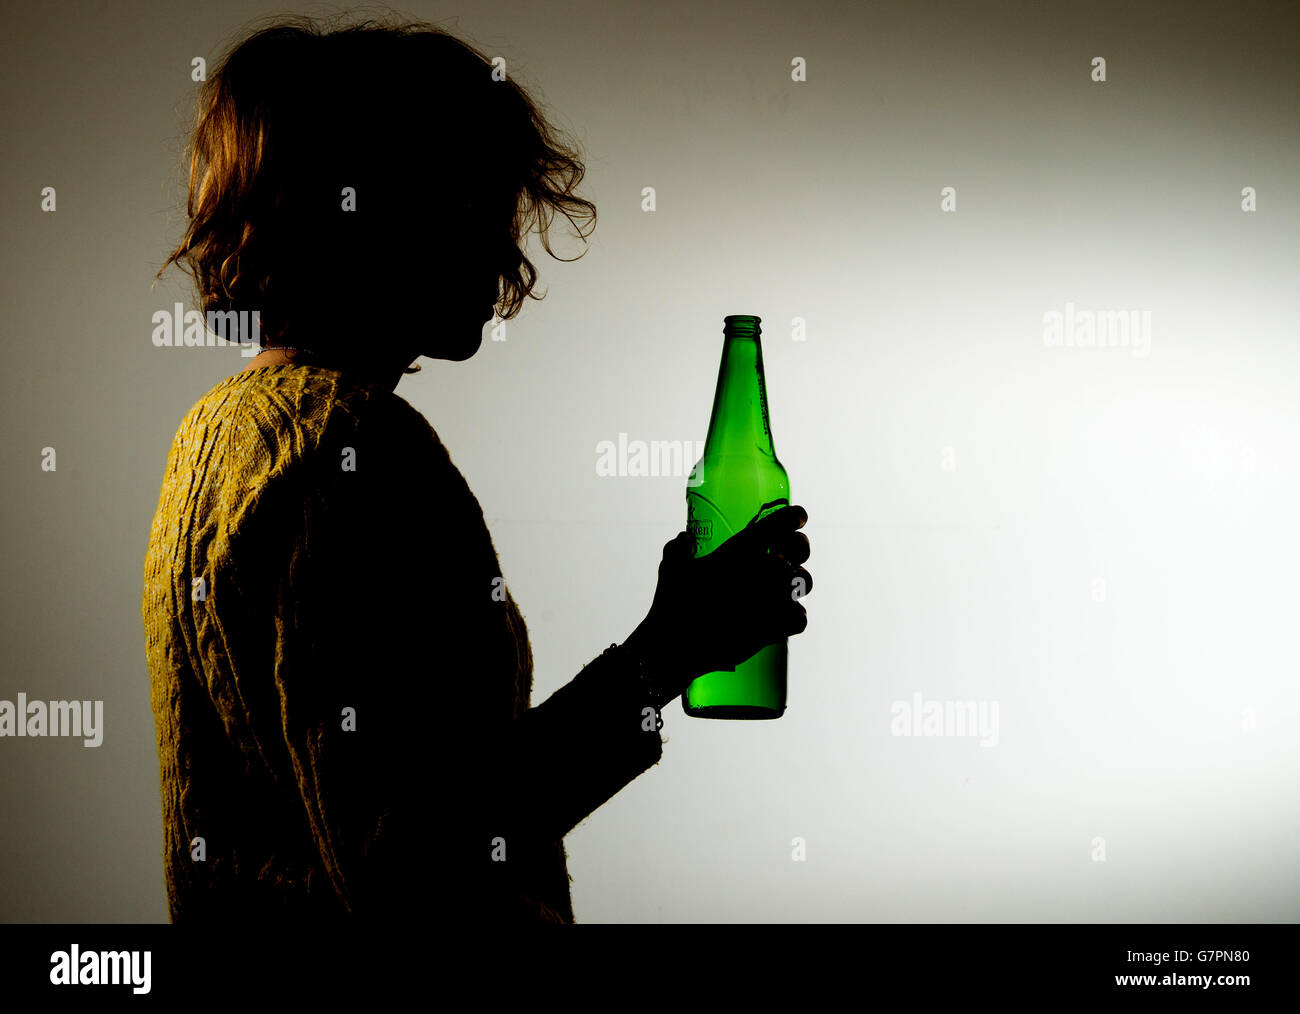 Une femme qui boit de l'alcool Photo Stock - Alamy